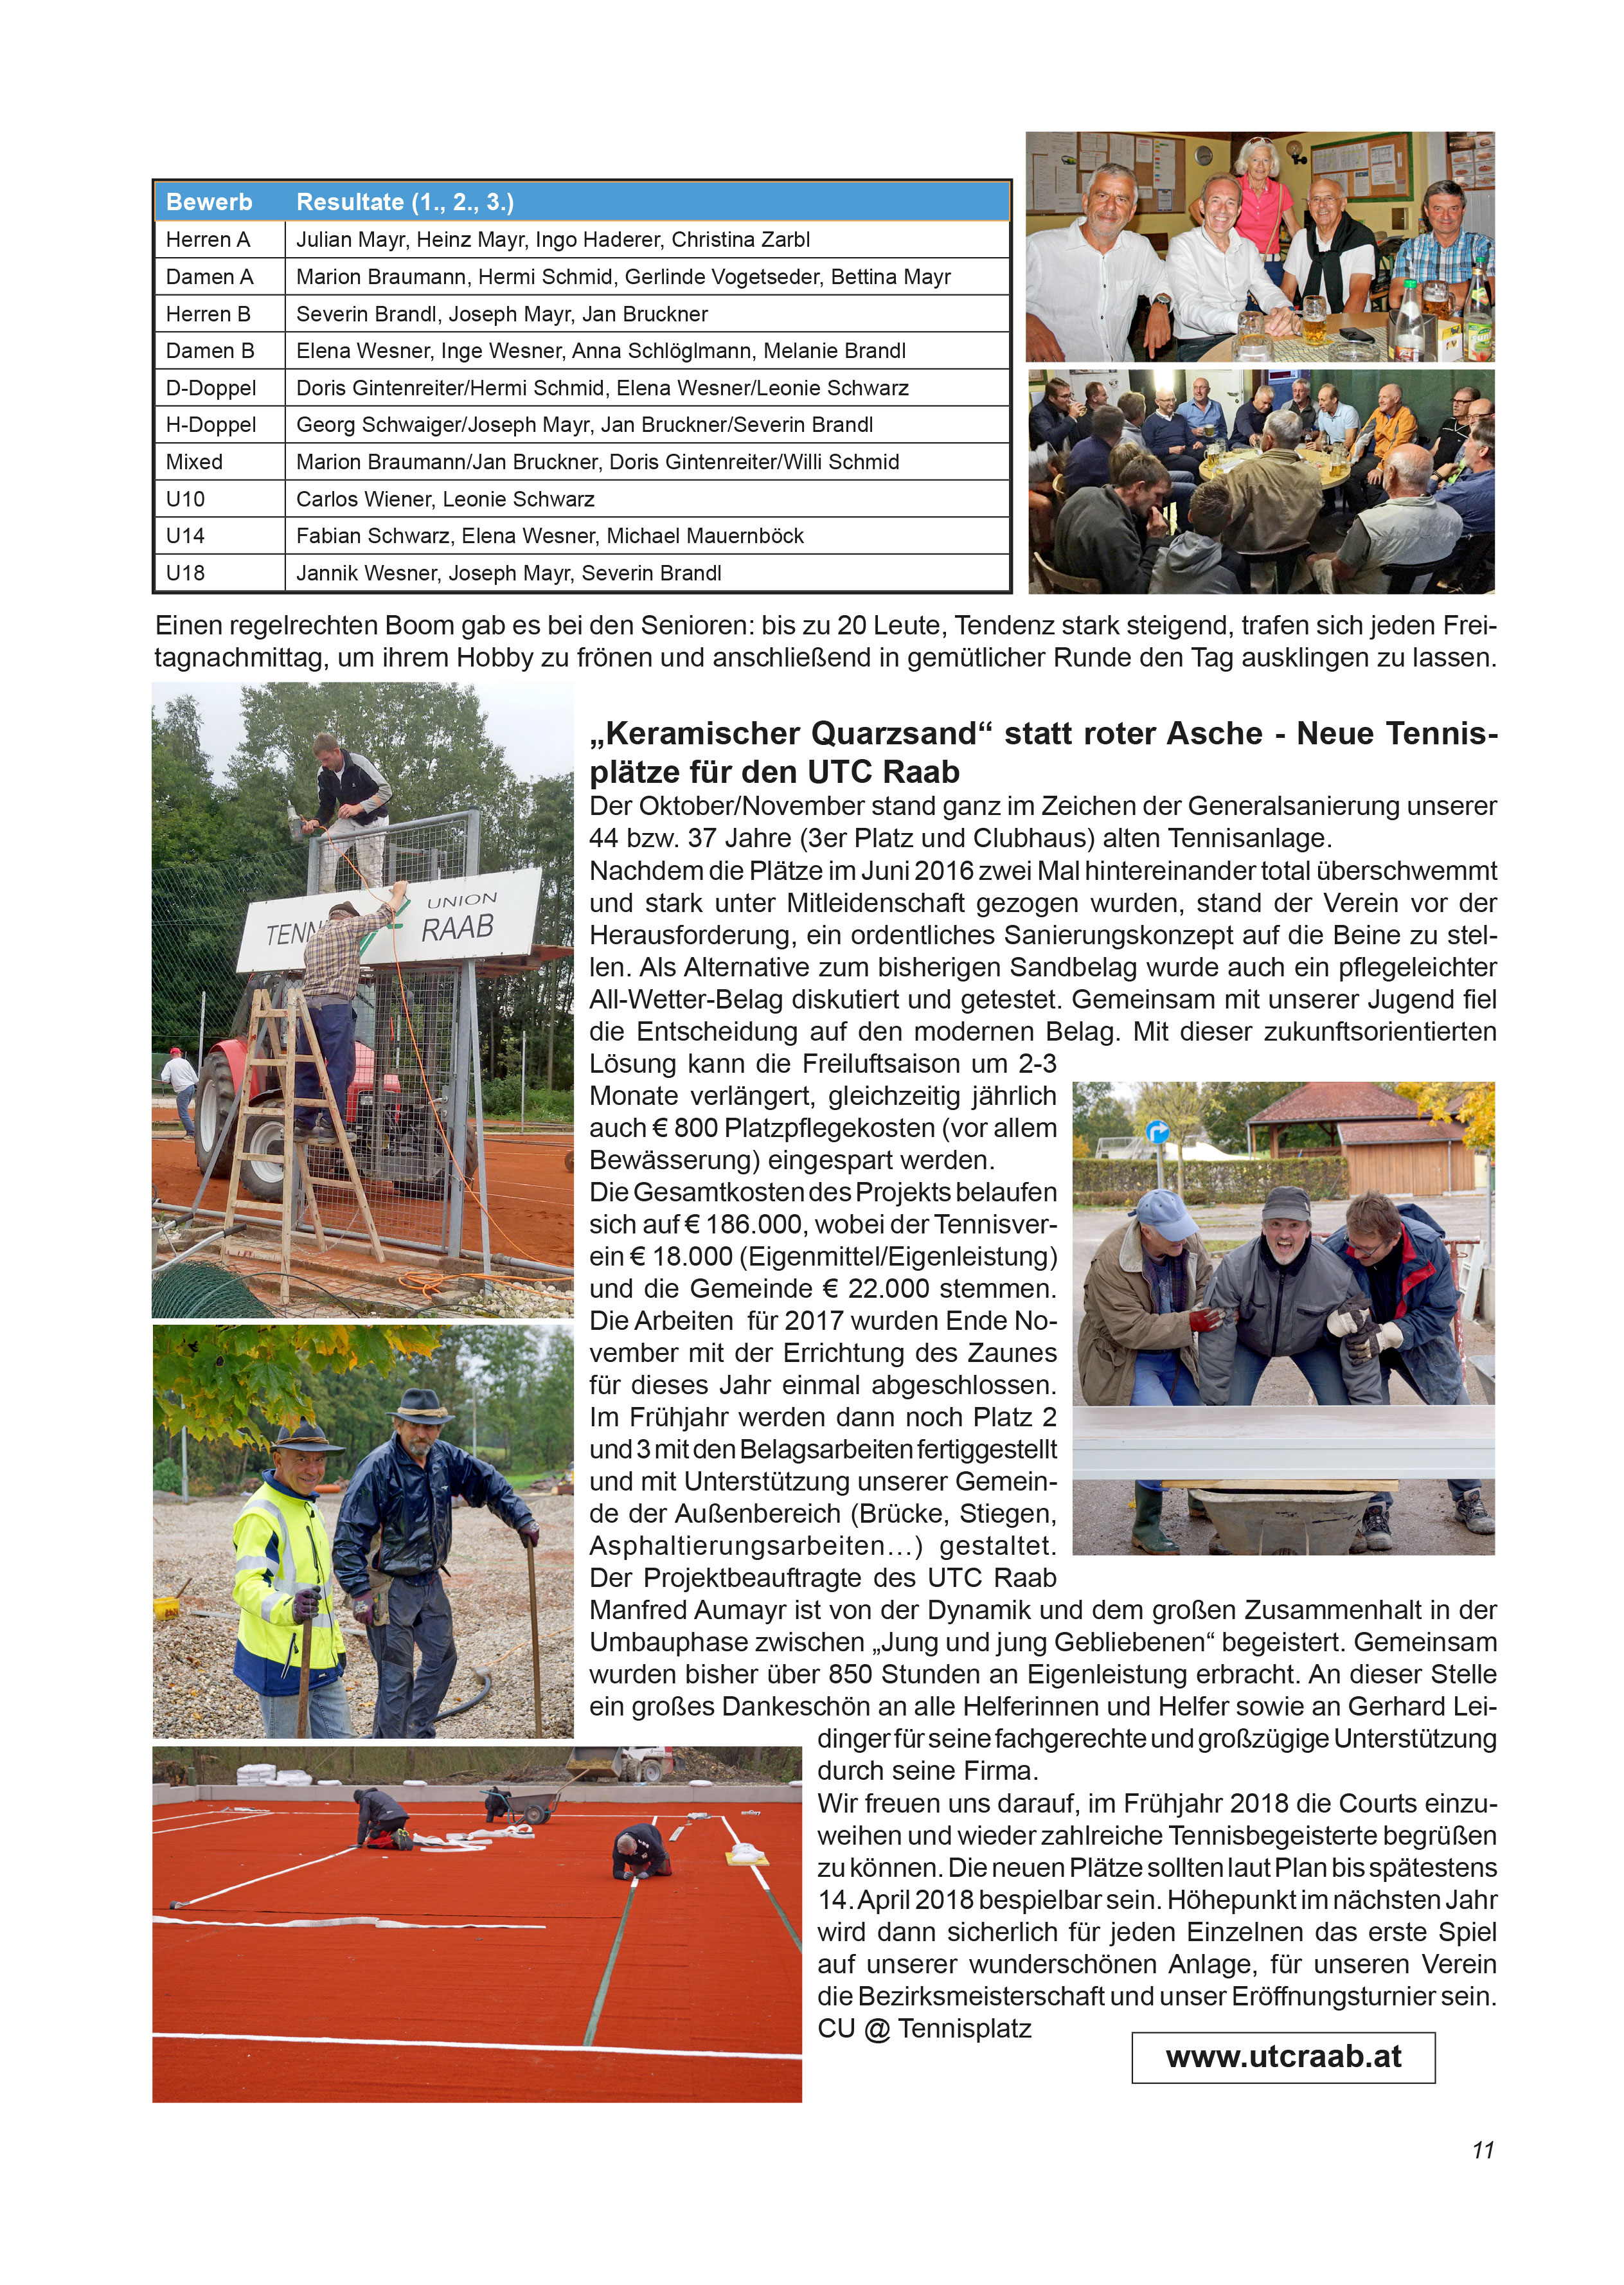 Unionzeitung 2017 - Seite 11